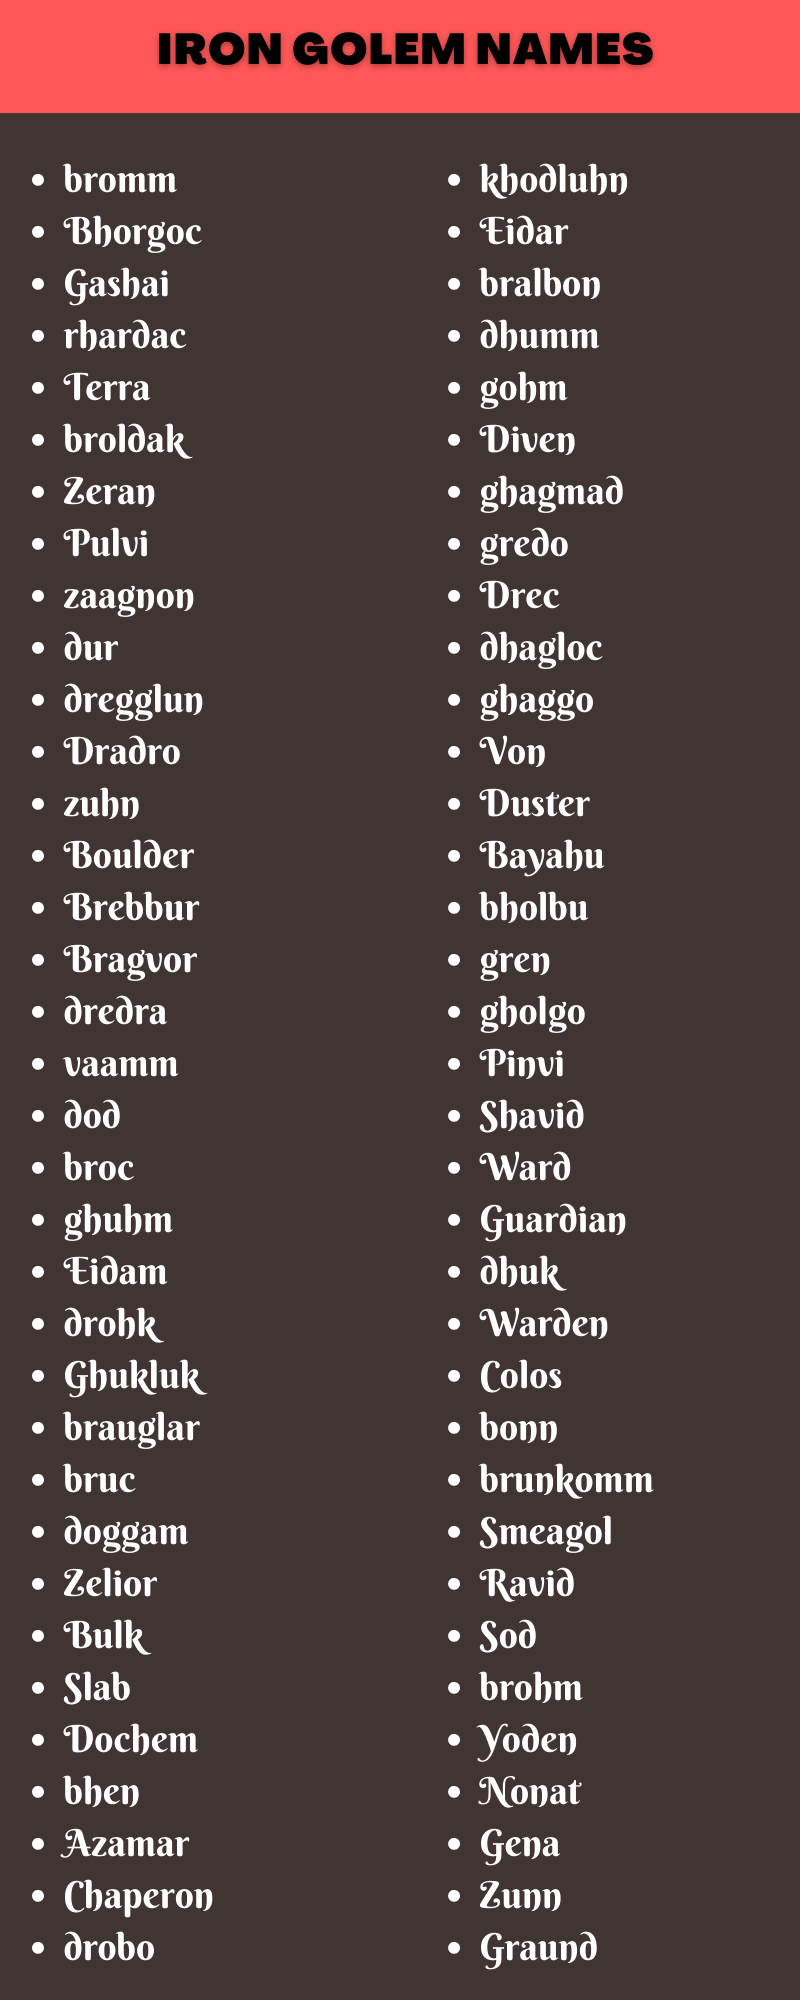 Iron Golem Names